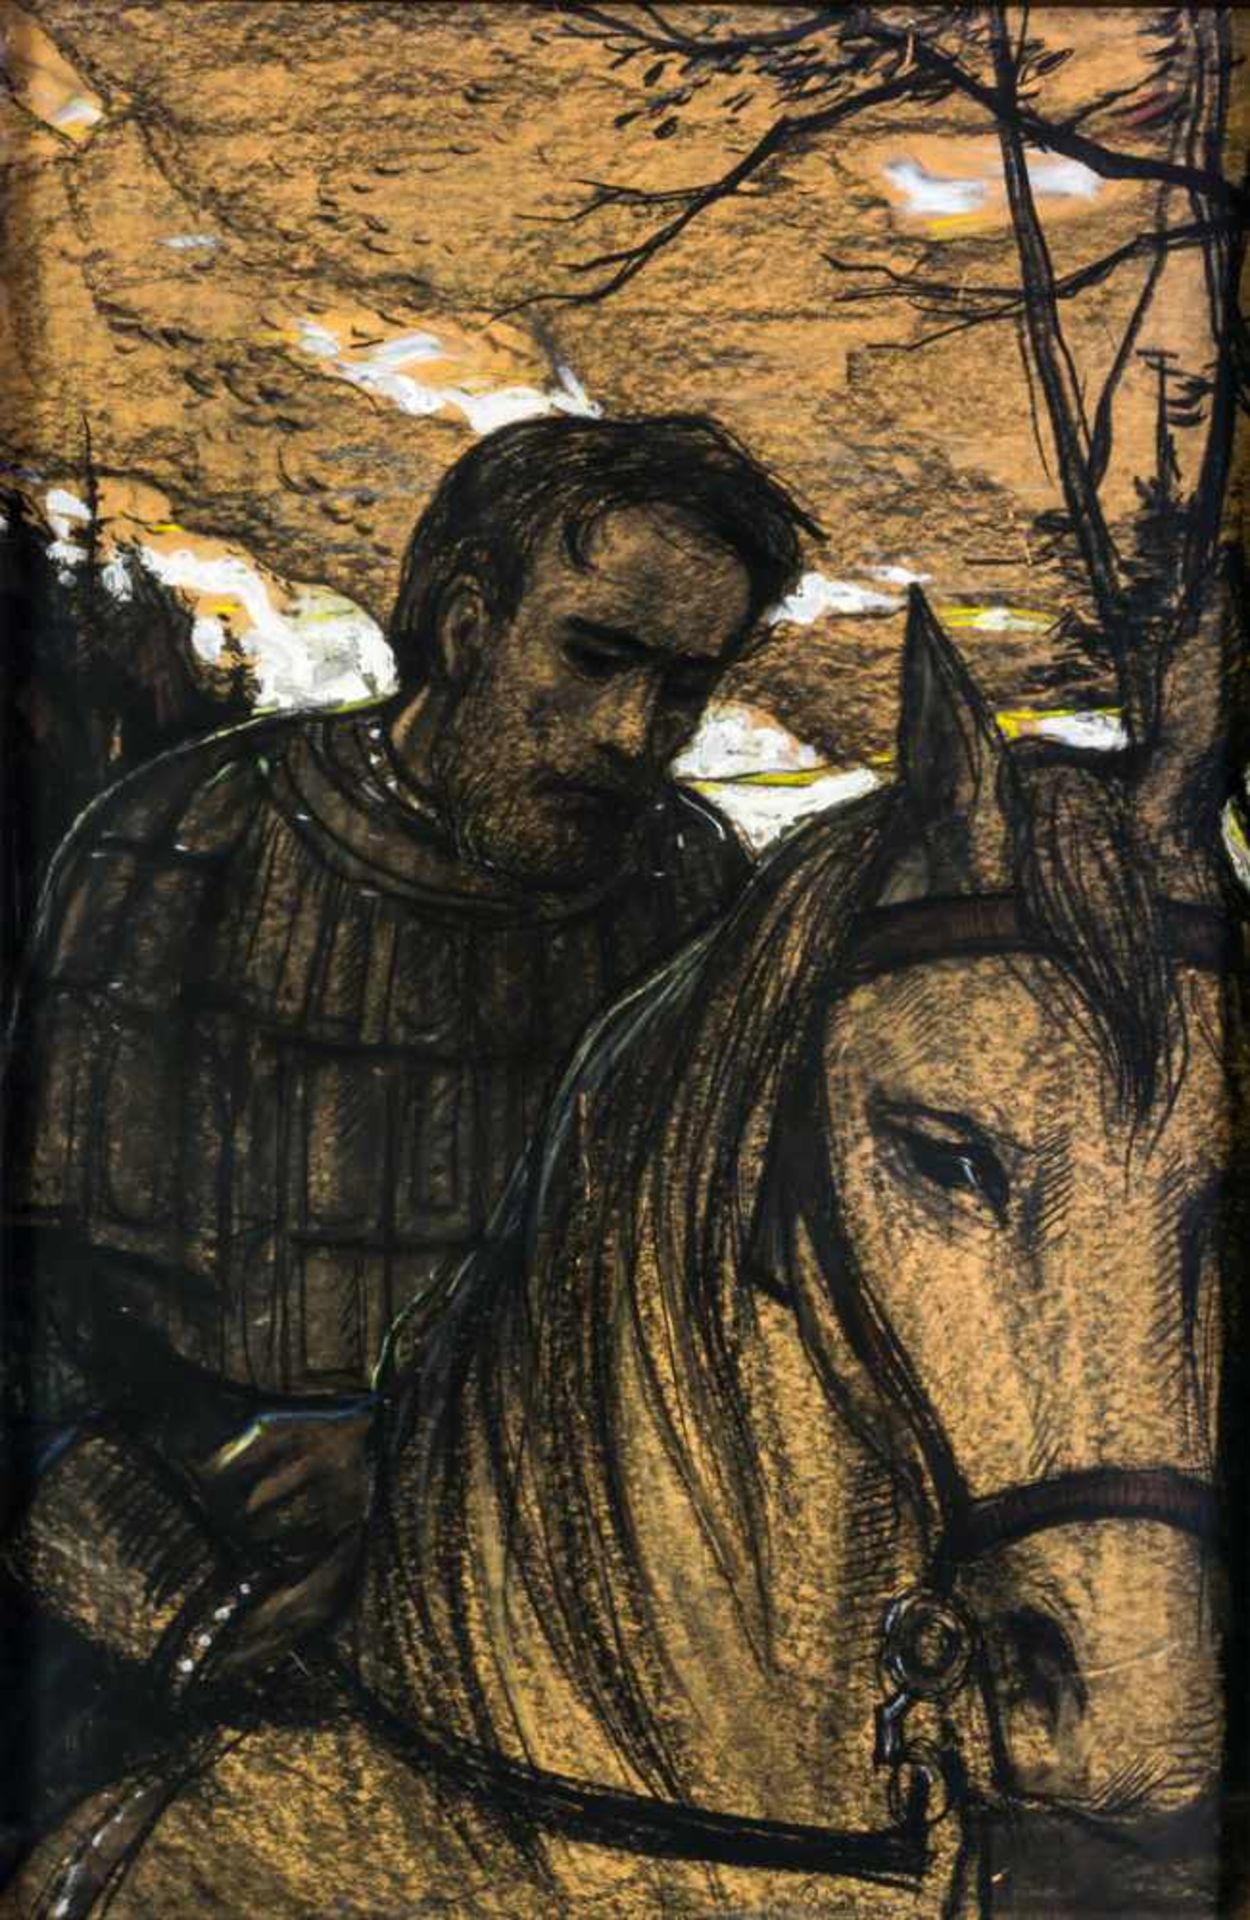 Ilya Glazunow (1930 - 2017) Bojare zu Pferd Kreidezeichnung auf Papier, signiert und datiert 1971